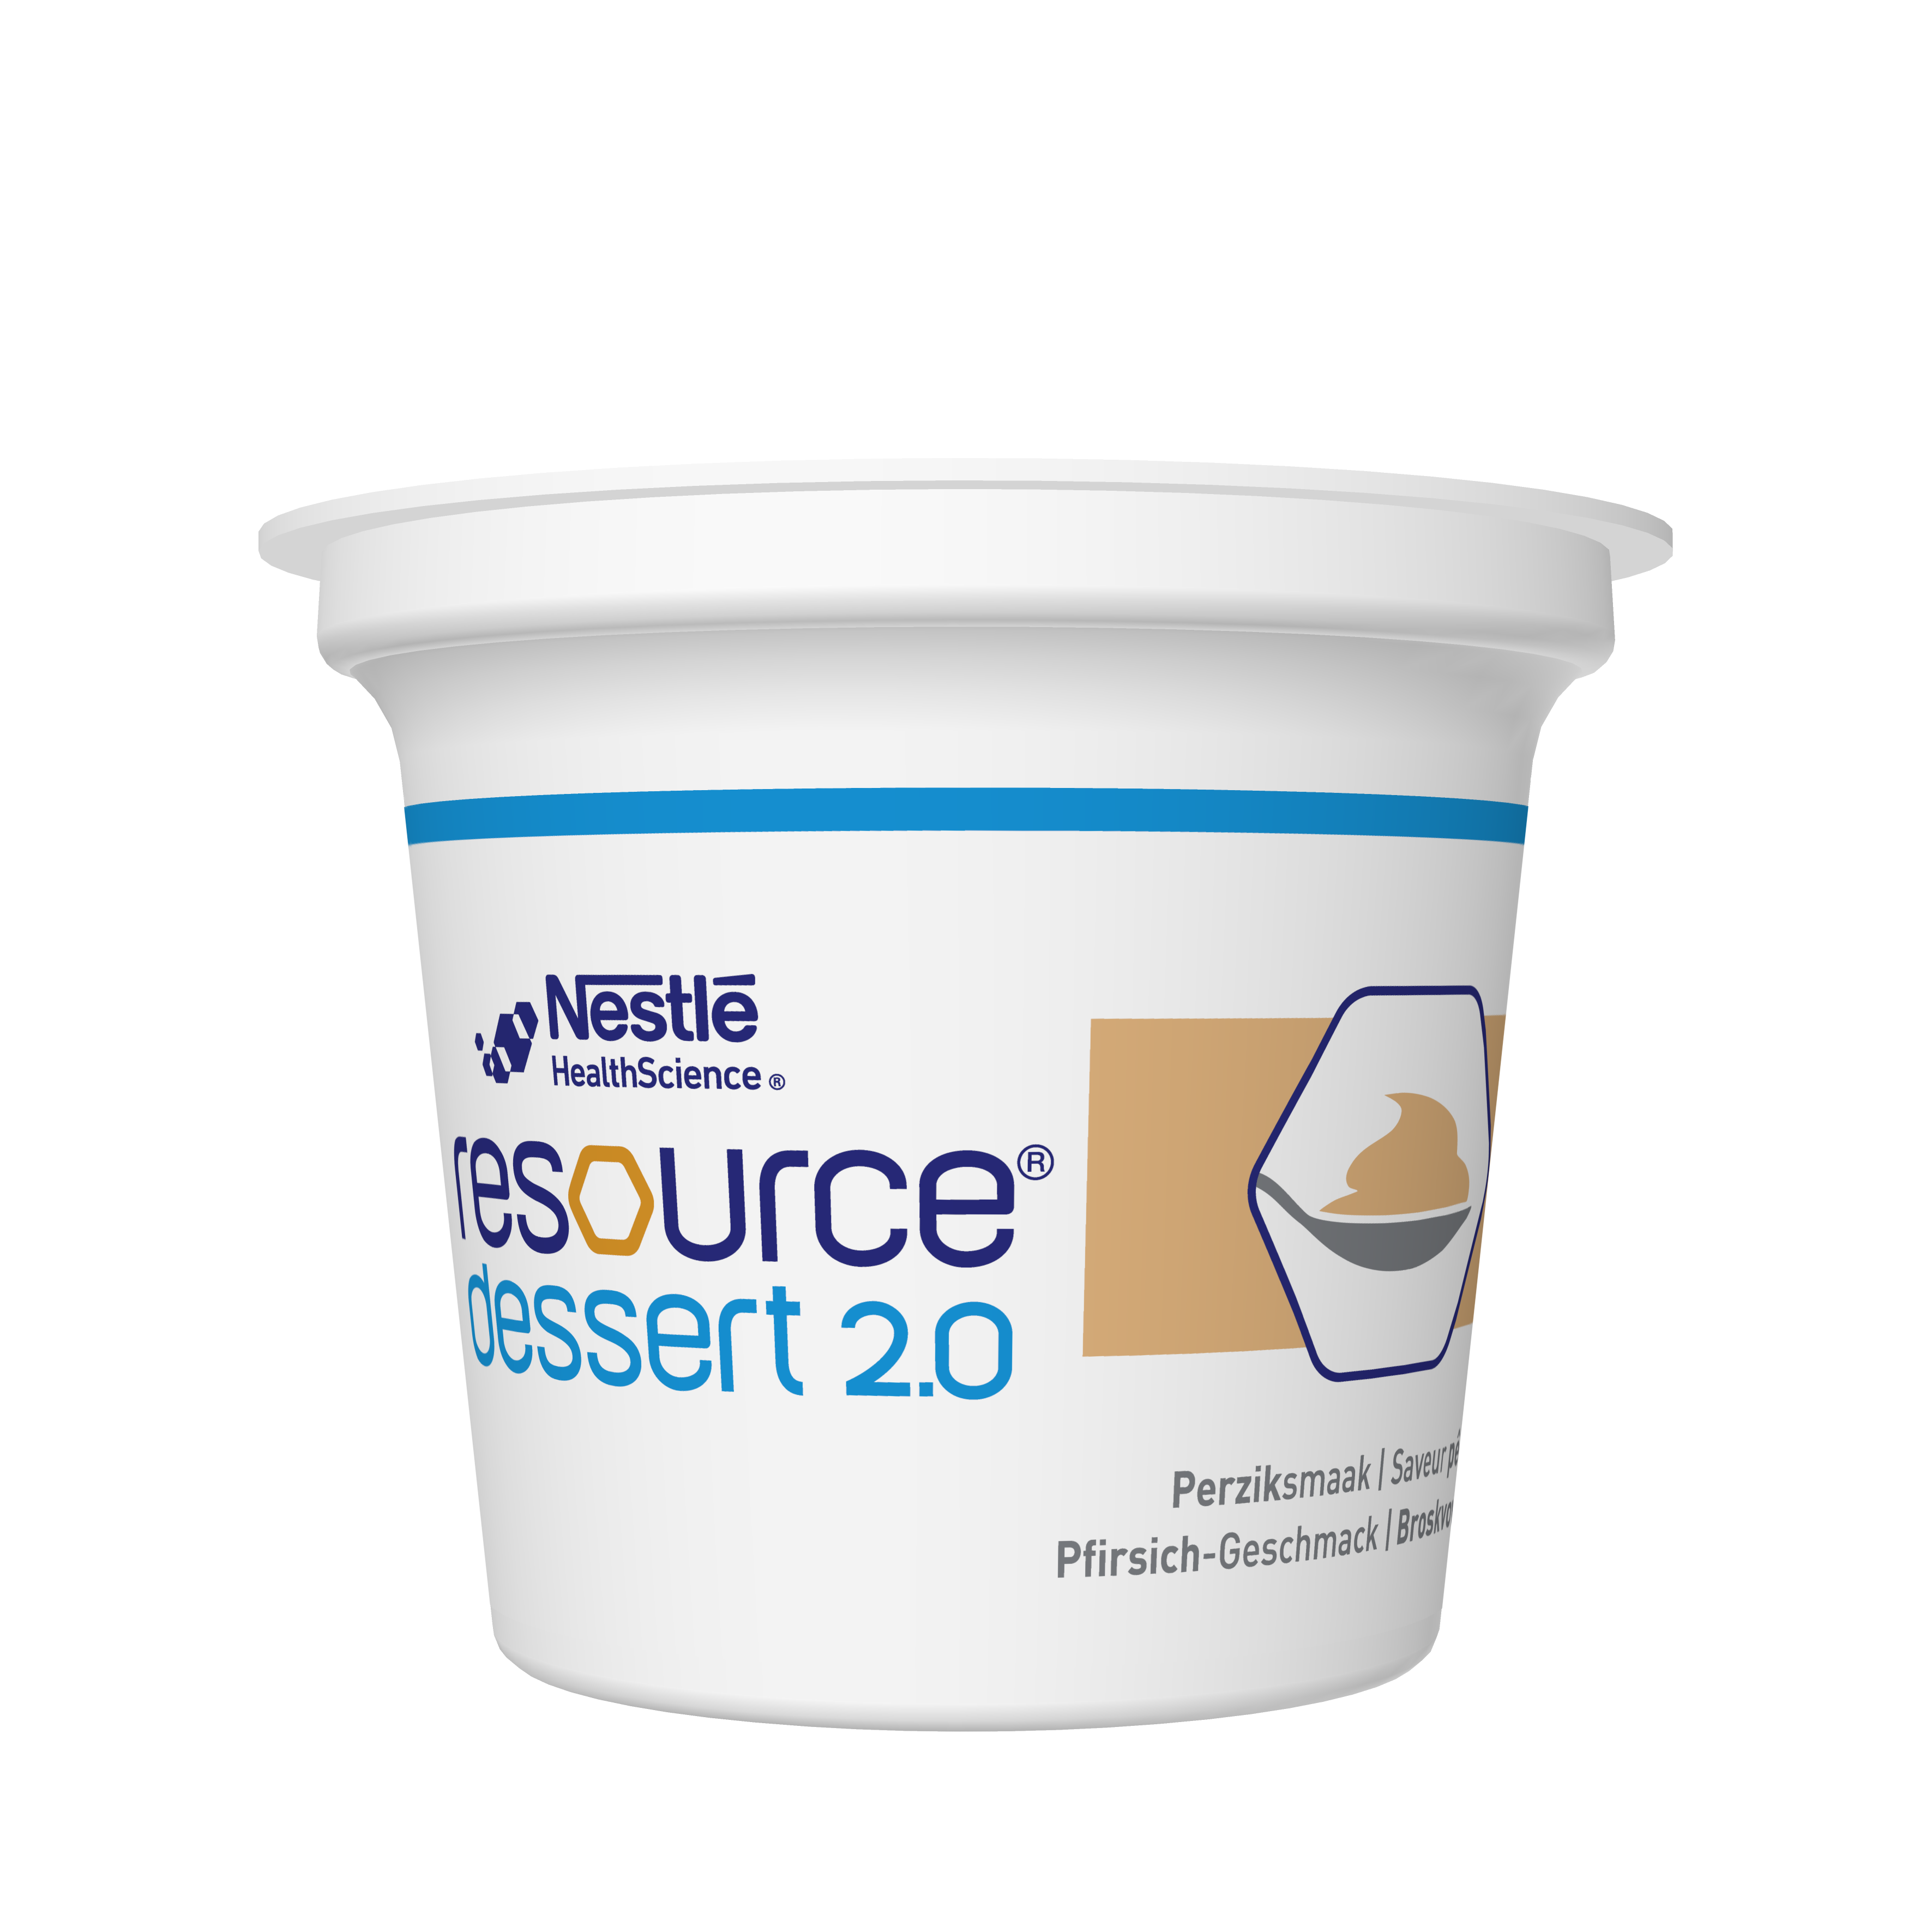 Nestlé Resource Dessert 2.0 Pfirsich, 4x125 g